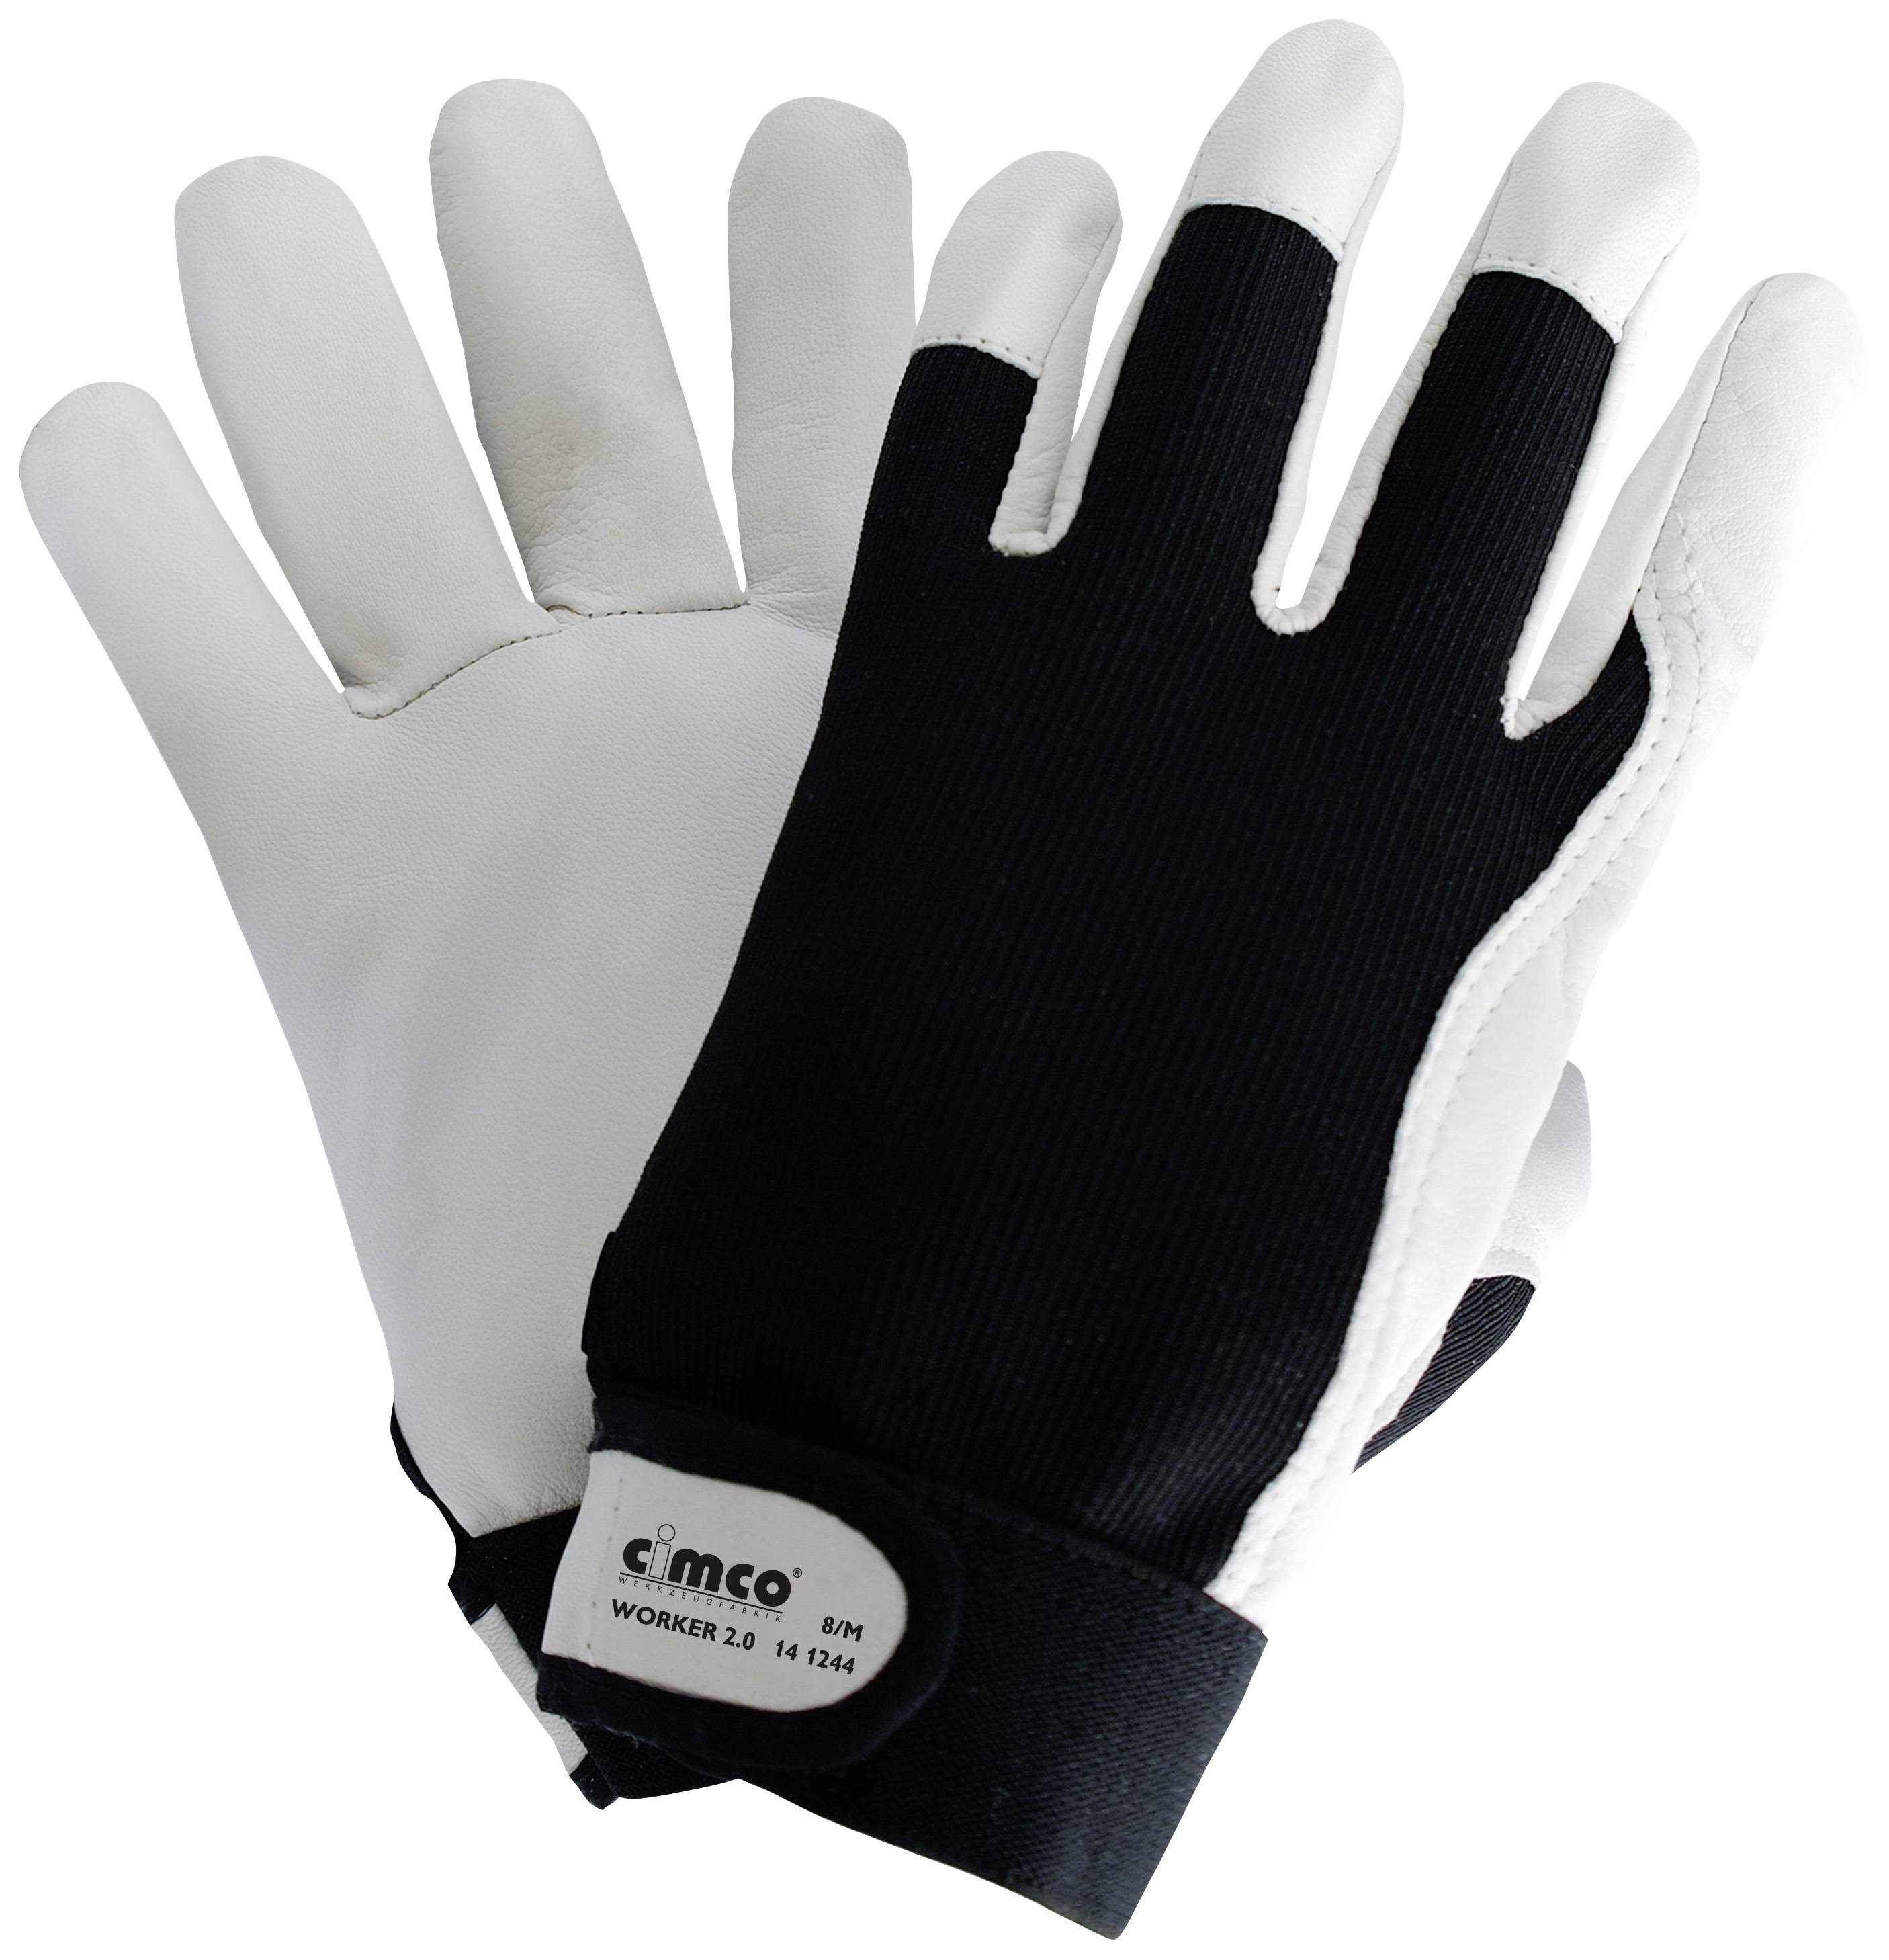 Cimco Worker 2.0 schwarz/weiß 141244 Nappaleder Arbeitshandschuh Größe (Handschuhe): 8, M EN 388 1 P